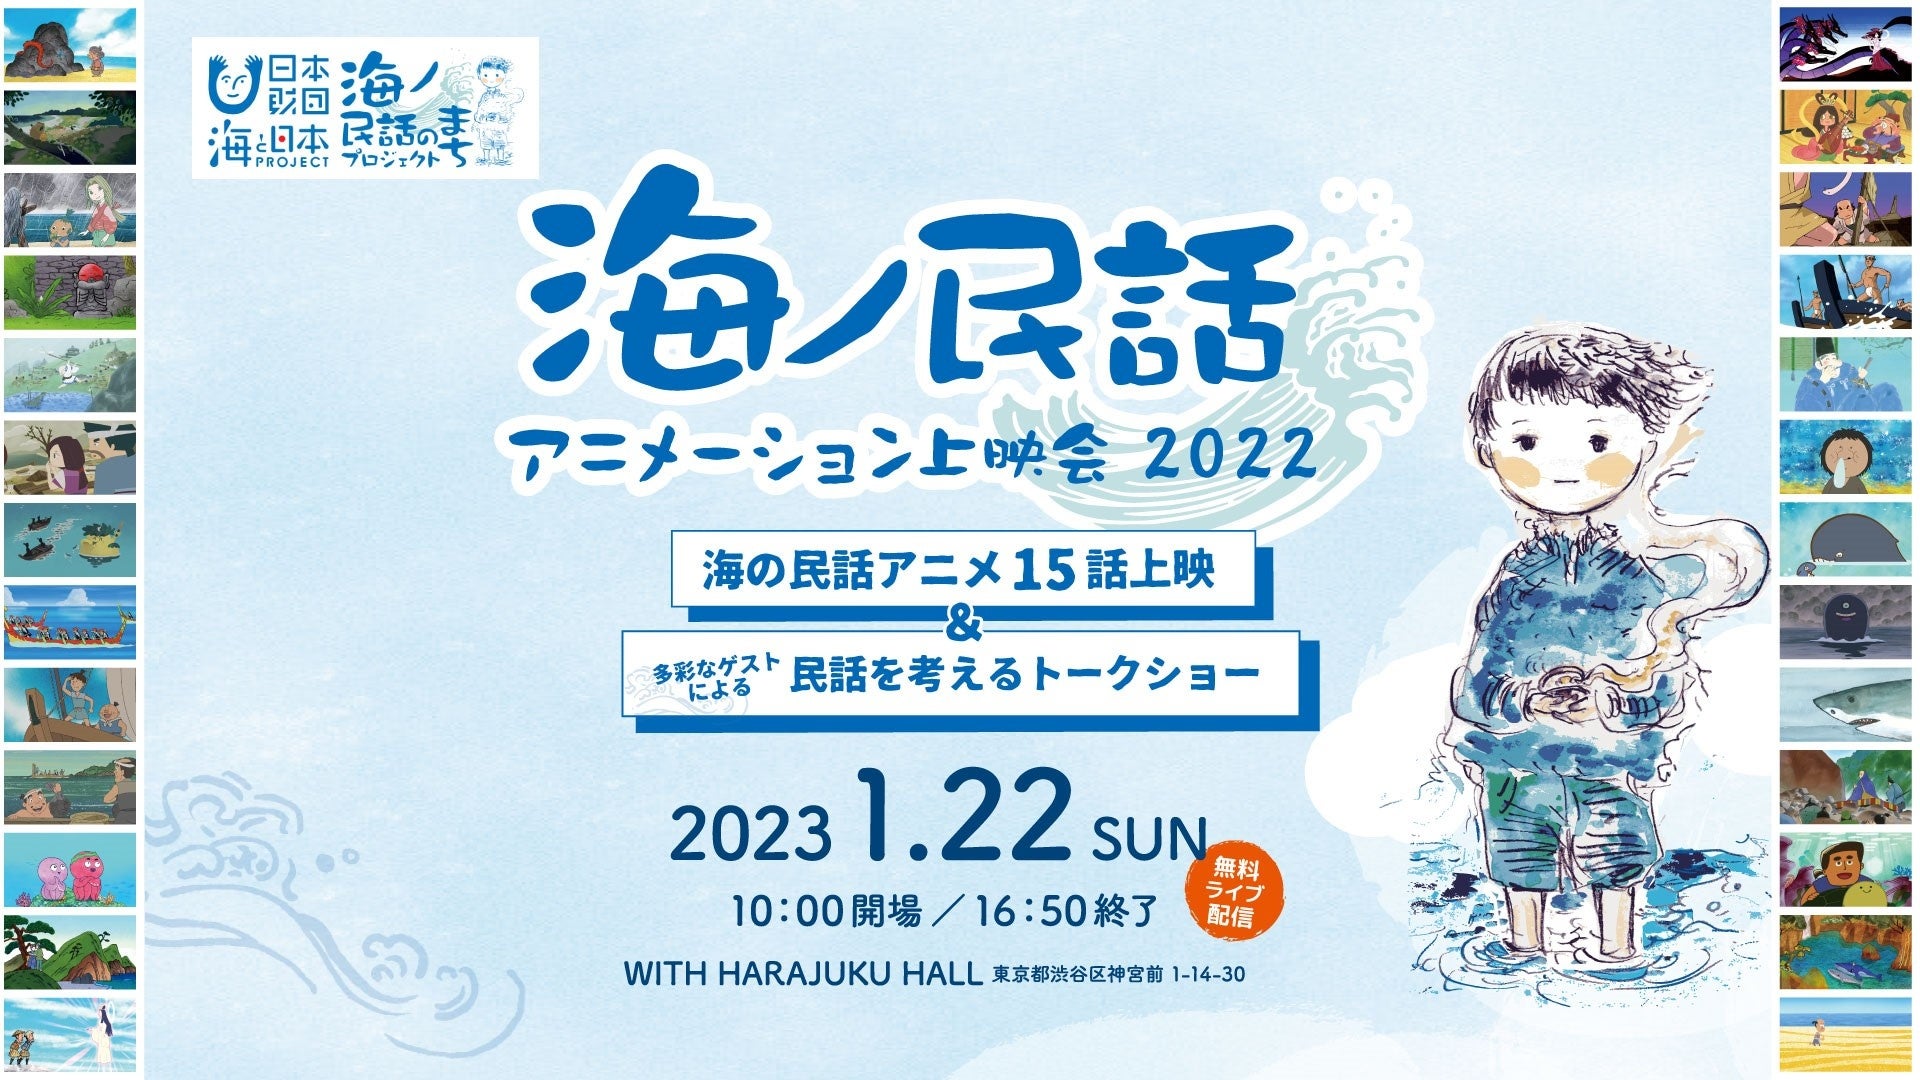 日本各地の海の民話アニメを一挙上映！民話を活用した地域づくりの可能性を深掘りする『海ノ民話アニメーション上映会 2022』開催